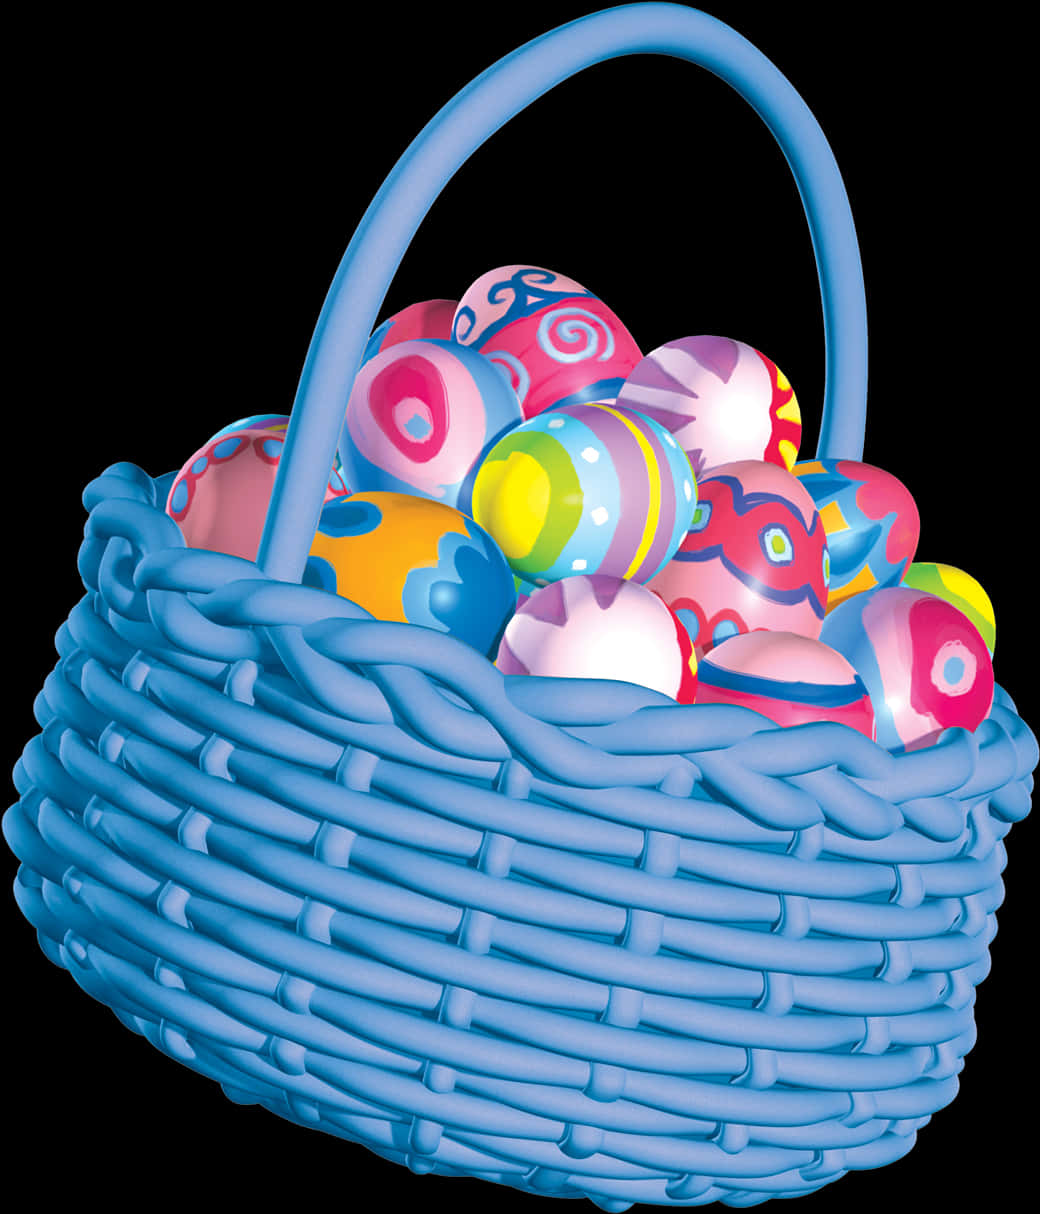 A Basket Full Of Eggs